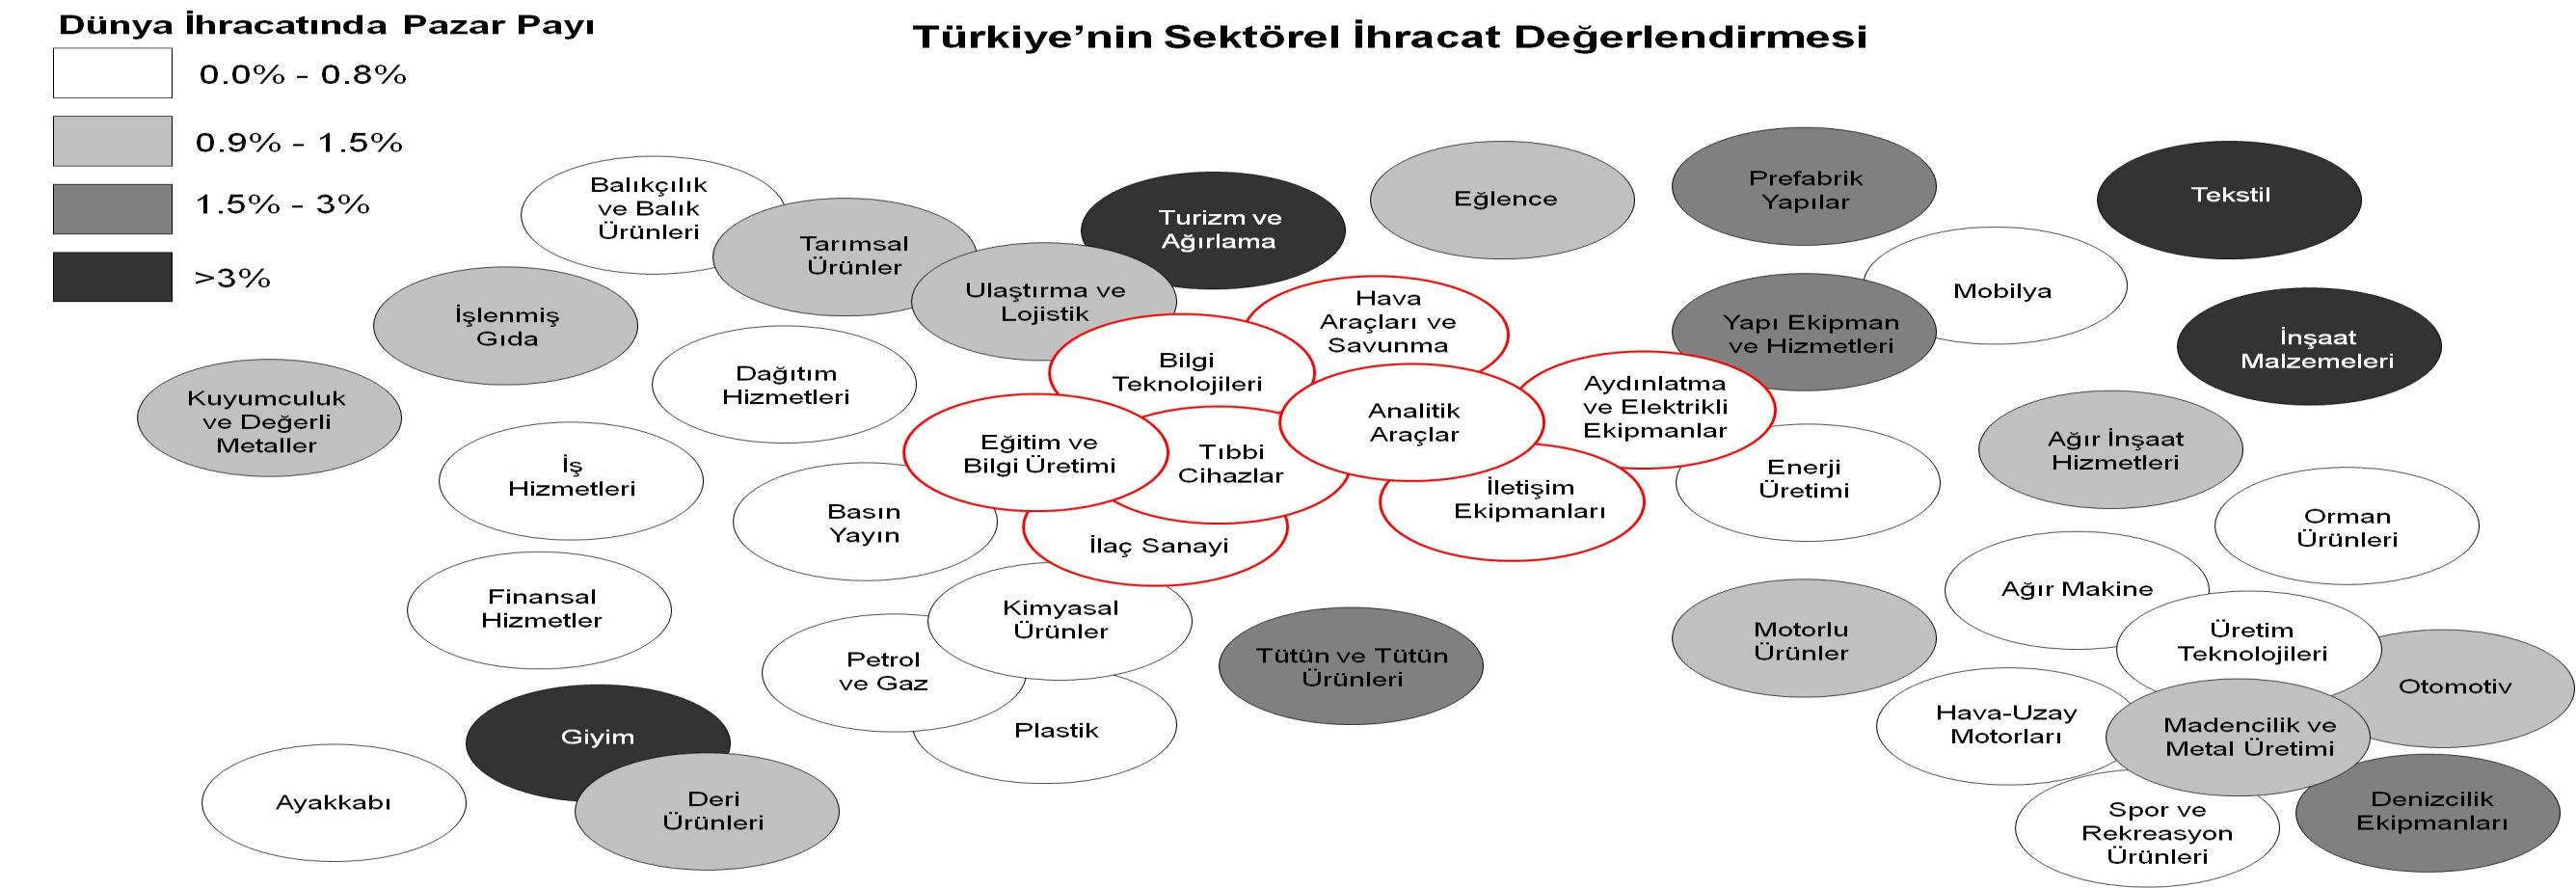 7 Peki Türkiye nin Başarılı Olduğu Sektörler